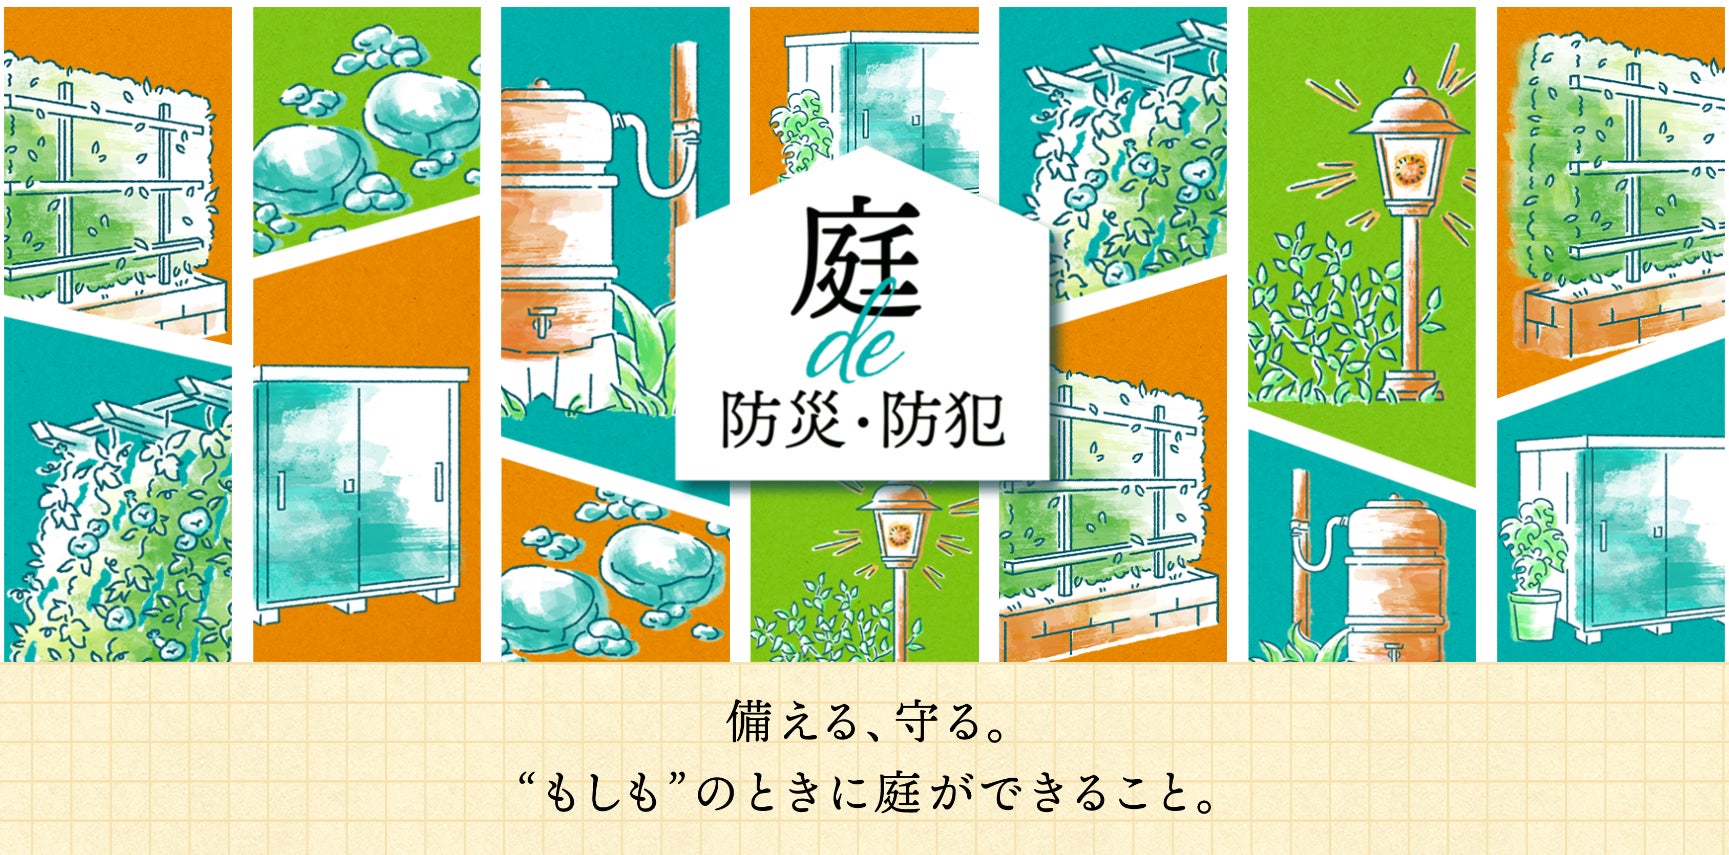 【東栄住宅】「niwaで過ごす庭曜日」庭を楽しむ新コンテンツを公開のサブ画像4